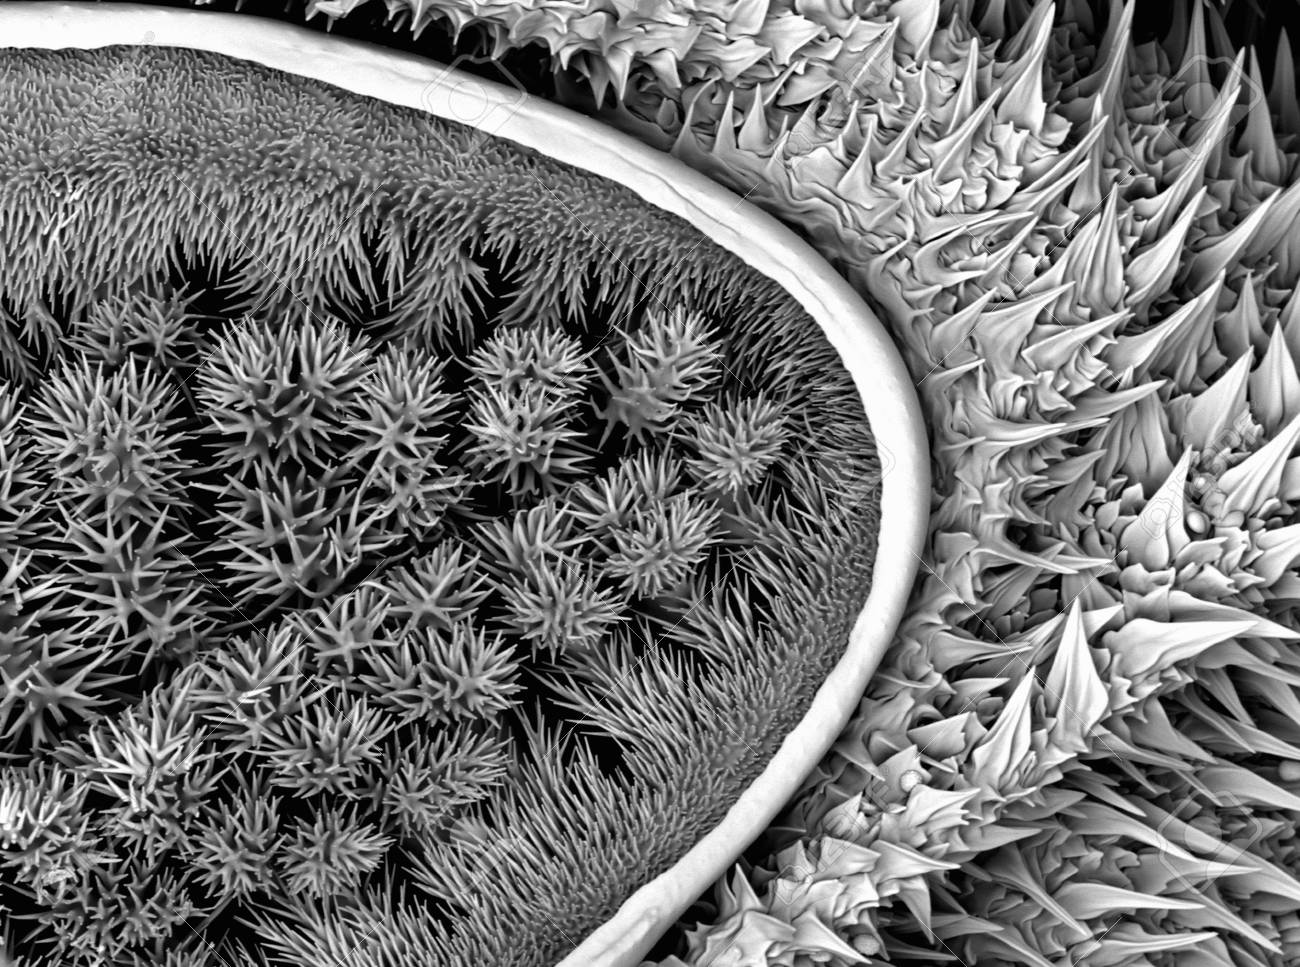 oruga vista por el microscopio